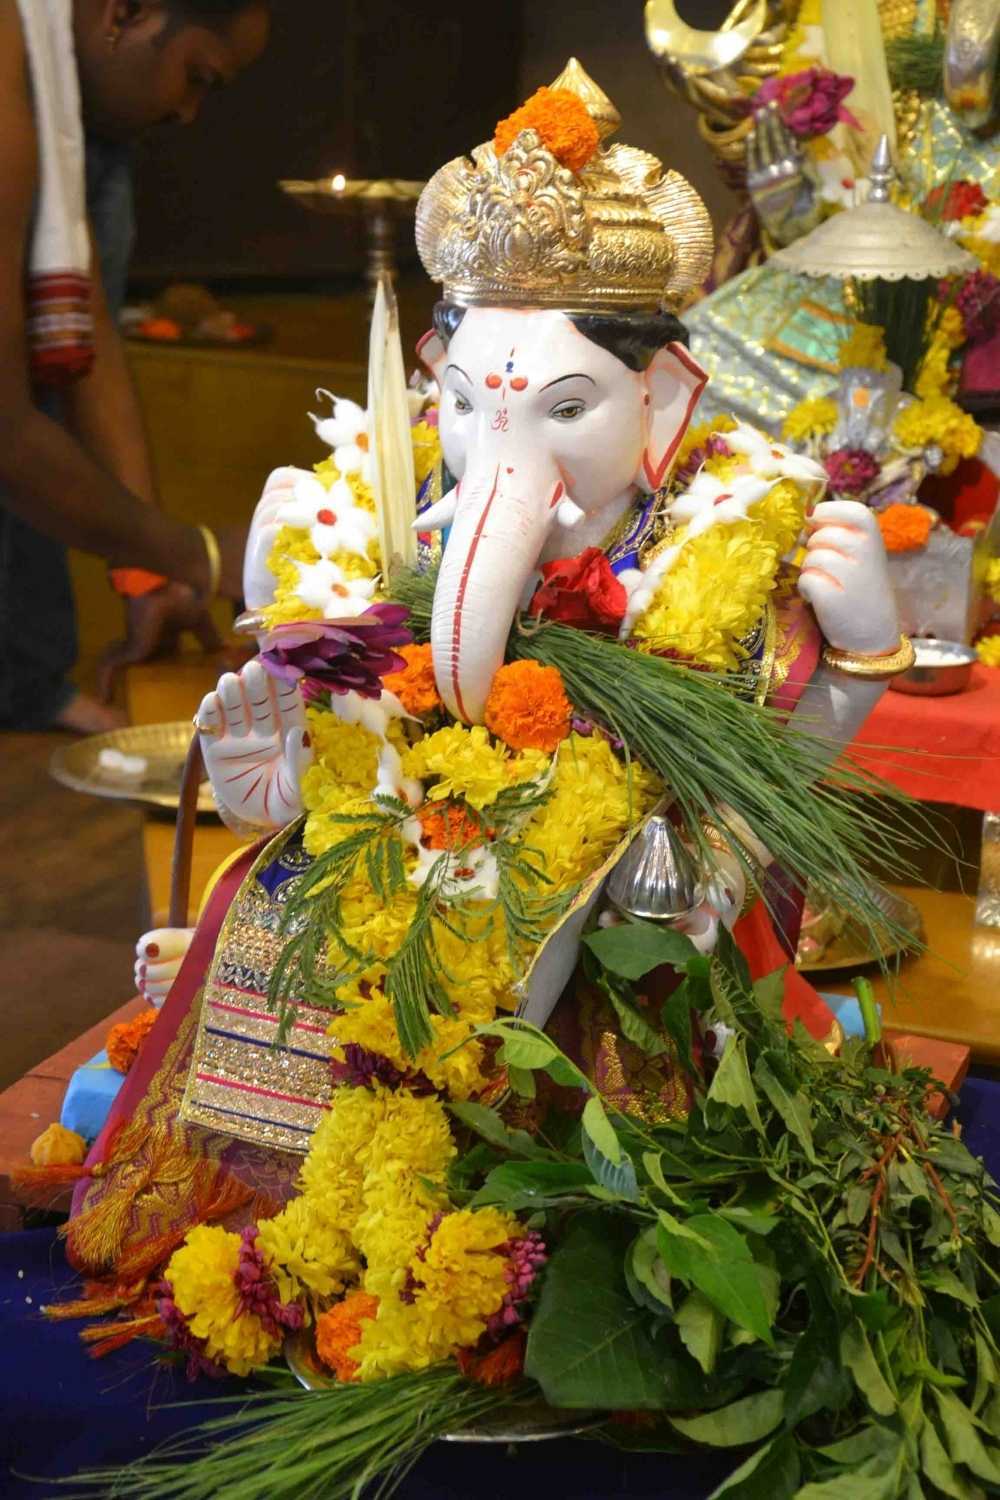 Ganesh Chaturthi festival